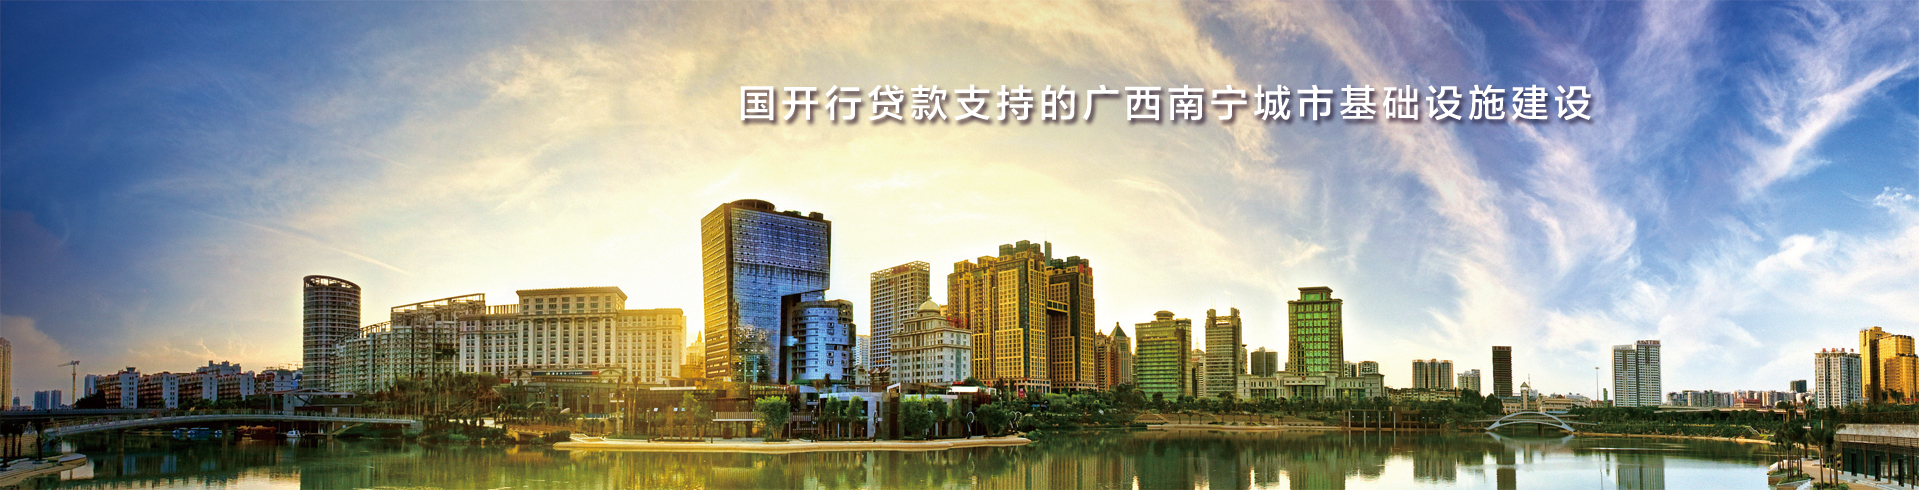 国开行贷款支持的广西南宁城市基础设施建设